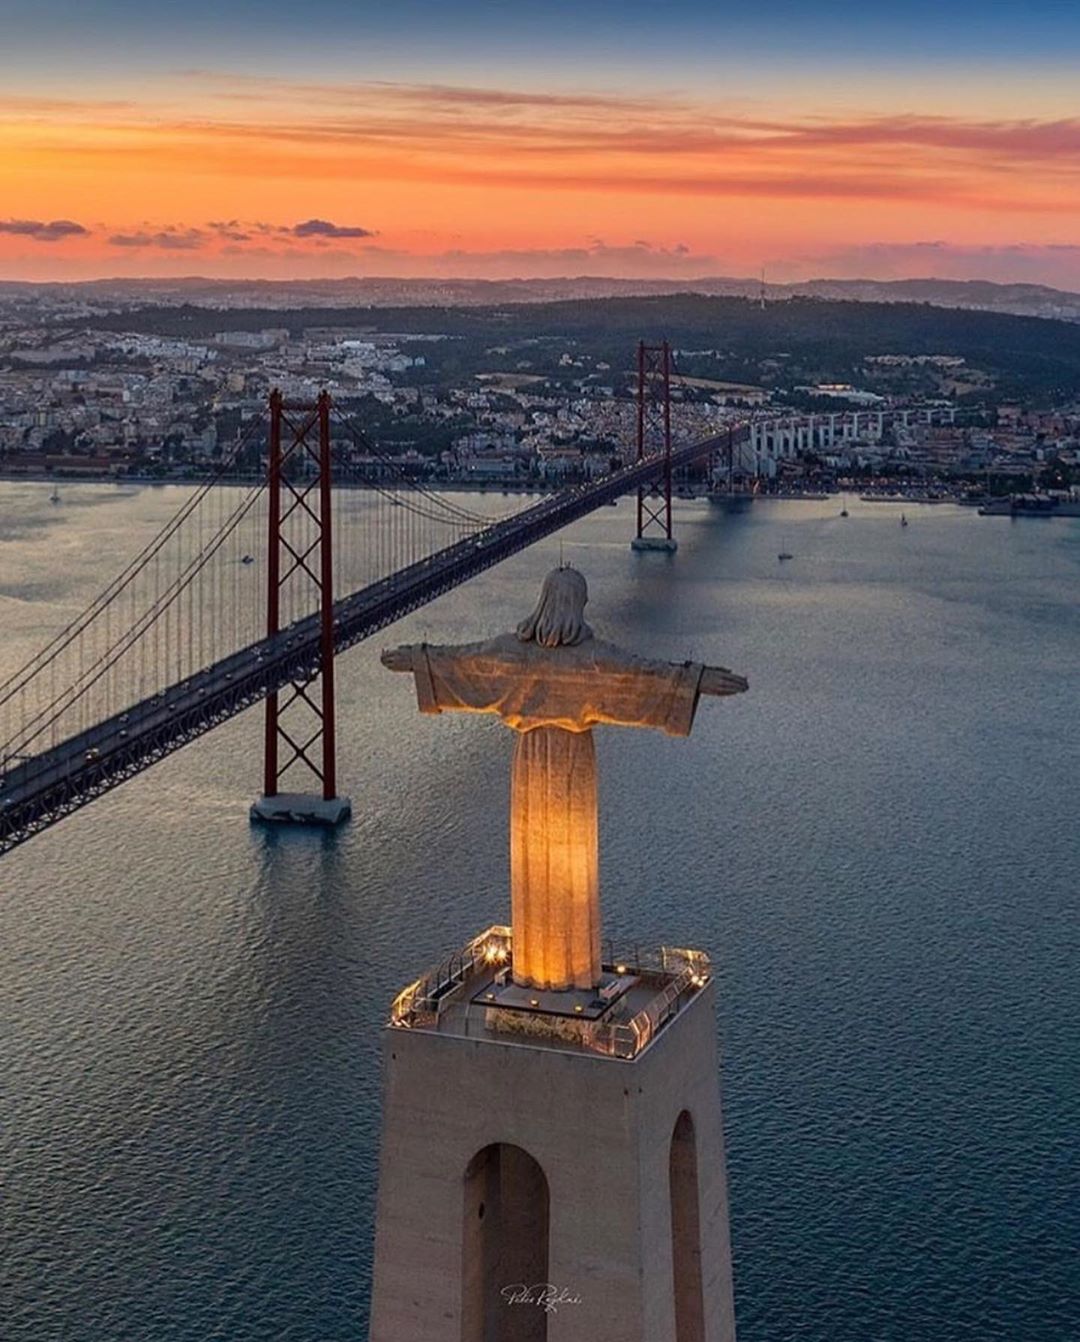 Tượng Chúa Cứu Rỗi (Chris Rei) bên cầu 25 April Lisbon bắc ngang sông Tagus, Lisbon, Bồ Đào Nha